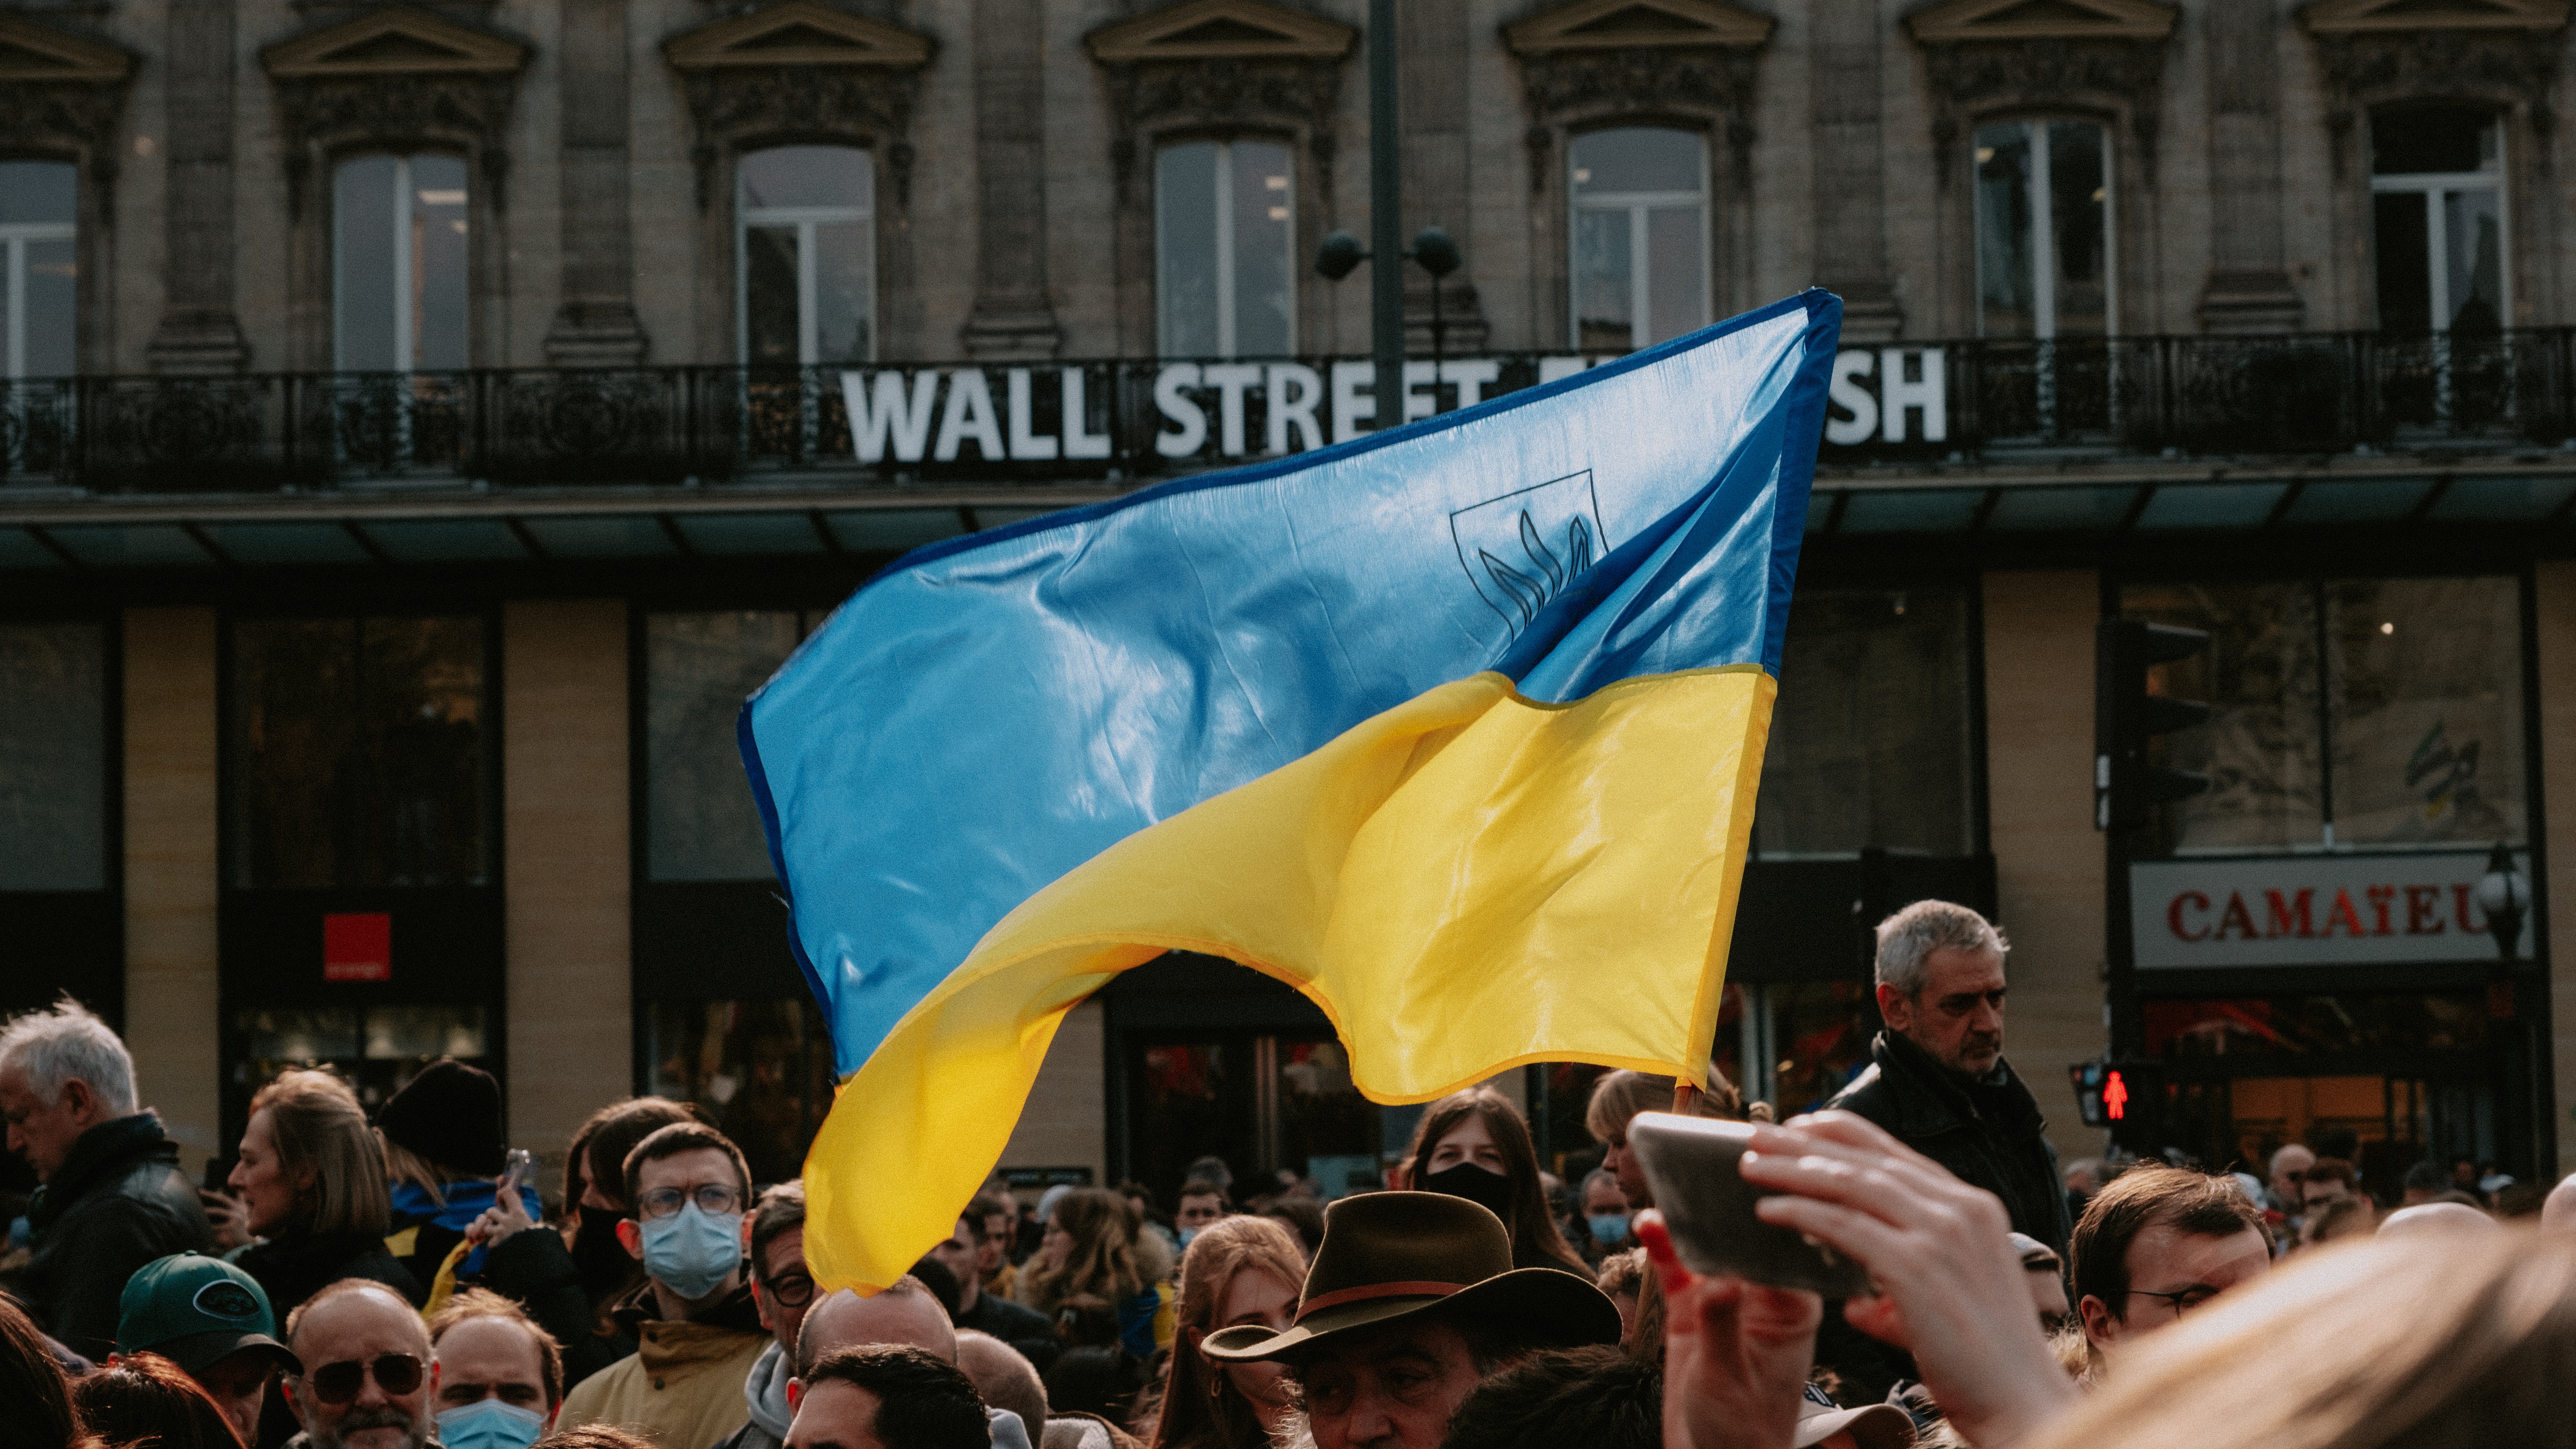 Crisis in Ukraine: Get Informed